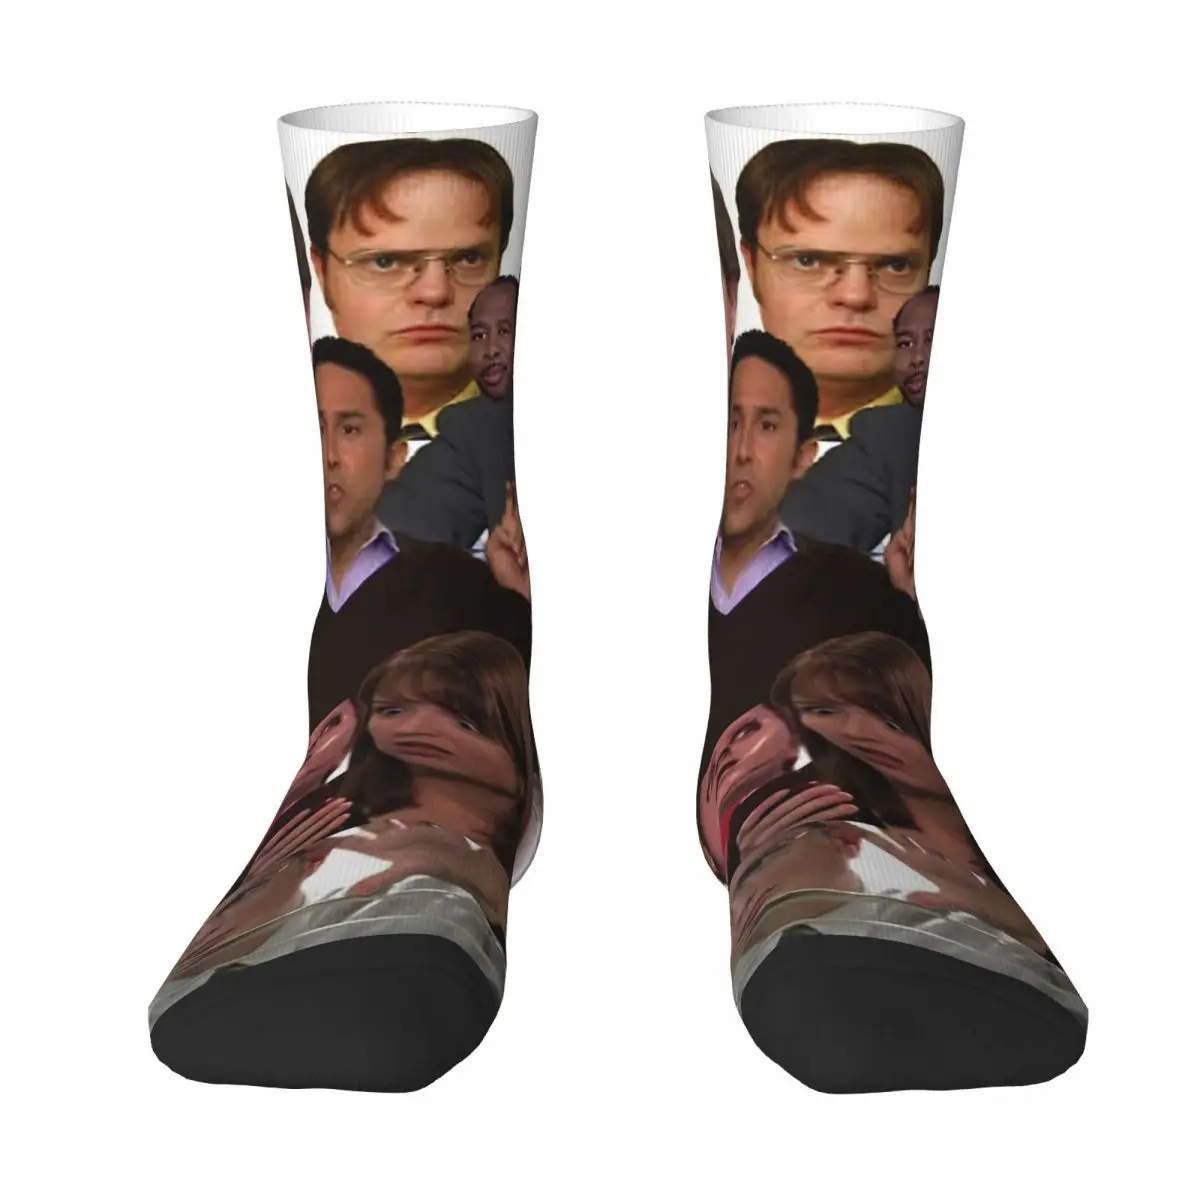 The Office Adult Socks,Unisex socks,men Socks women Socks